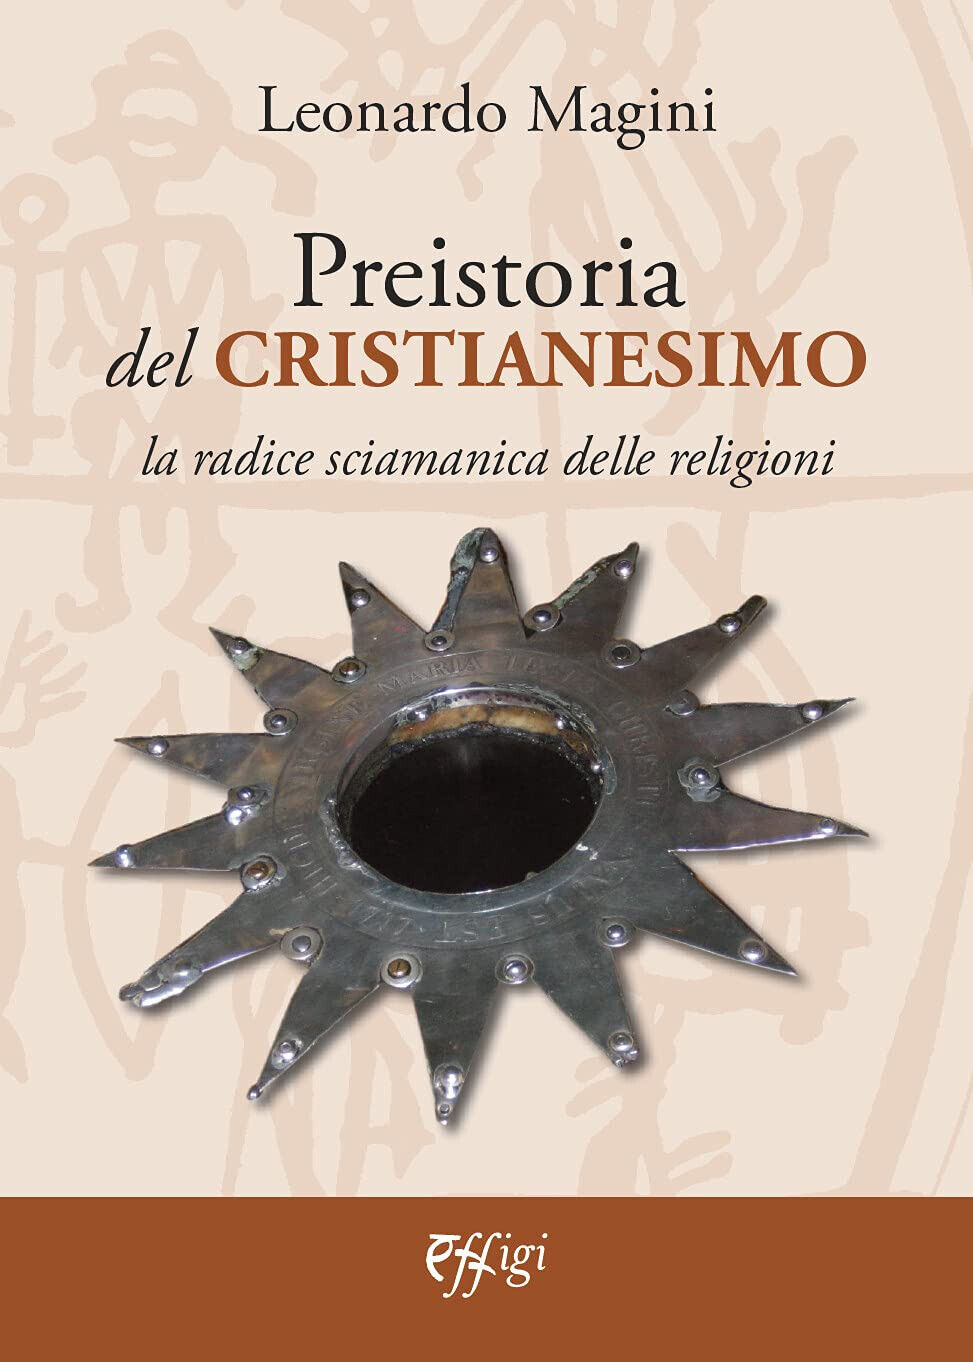 Preistoria del cristianesimo - Leonardo Magini - Effigi, 2021